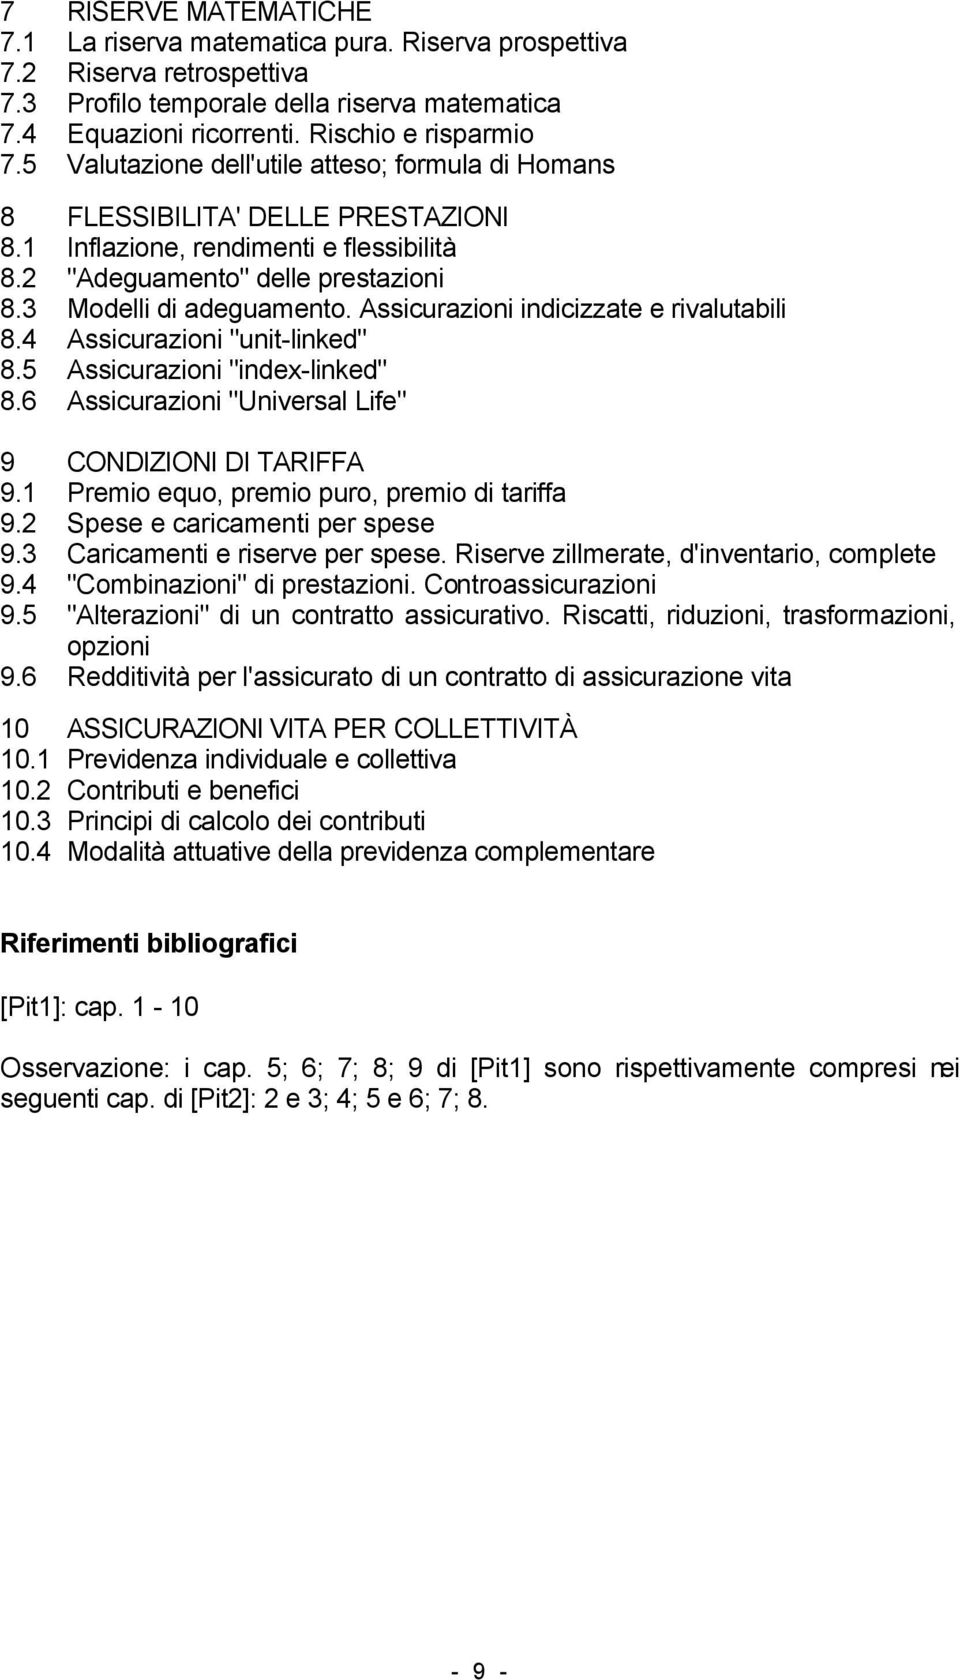 Assicurazioni indicizzate e rivalutabili 8.4 Assicurazioni "unit-linked" 8.5 Assicurazioni "index-linked" 8.6 Assicurazioni "Universal Life" 9 CONDIZIONI DI TARIFFA 9.